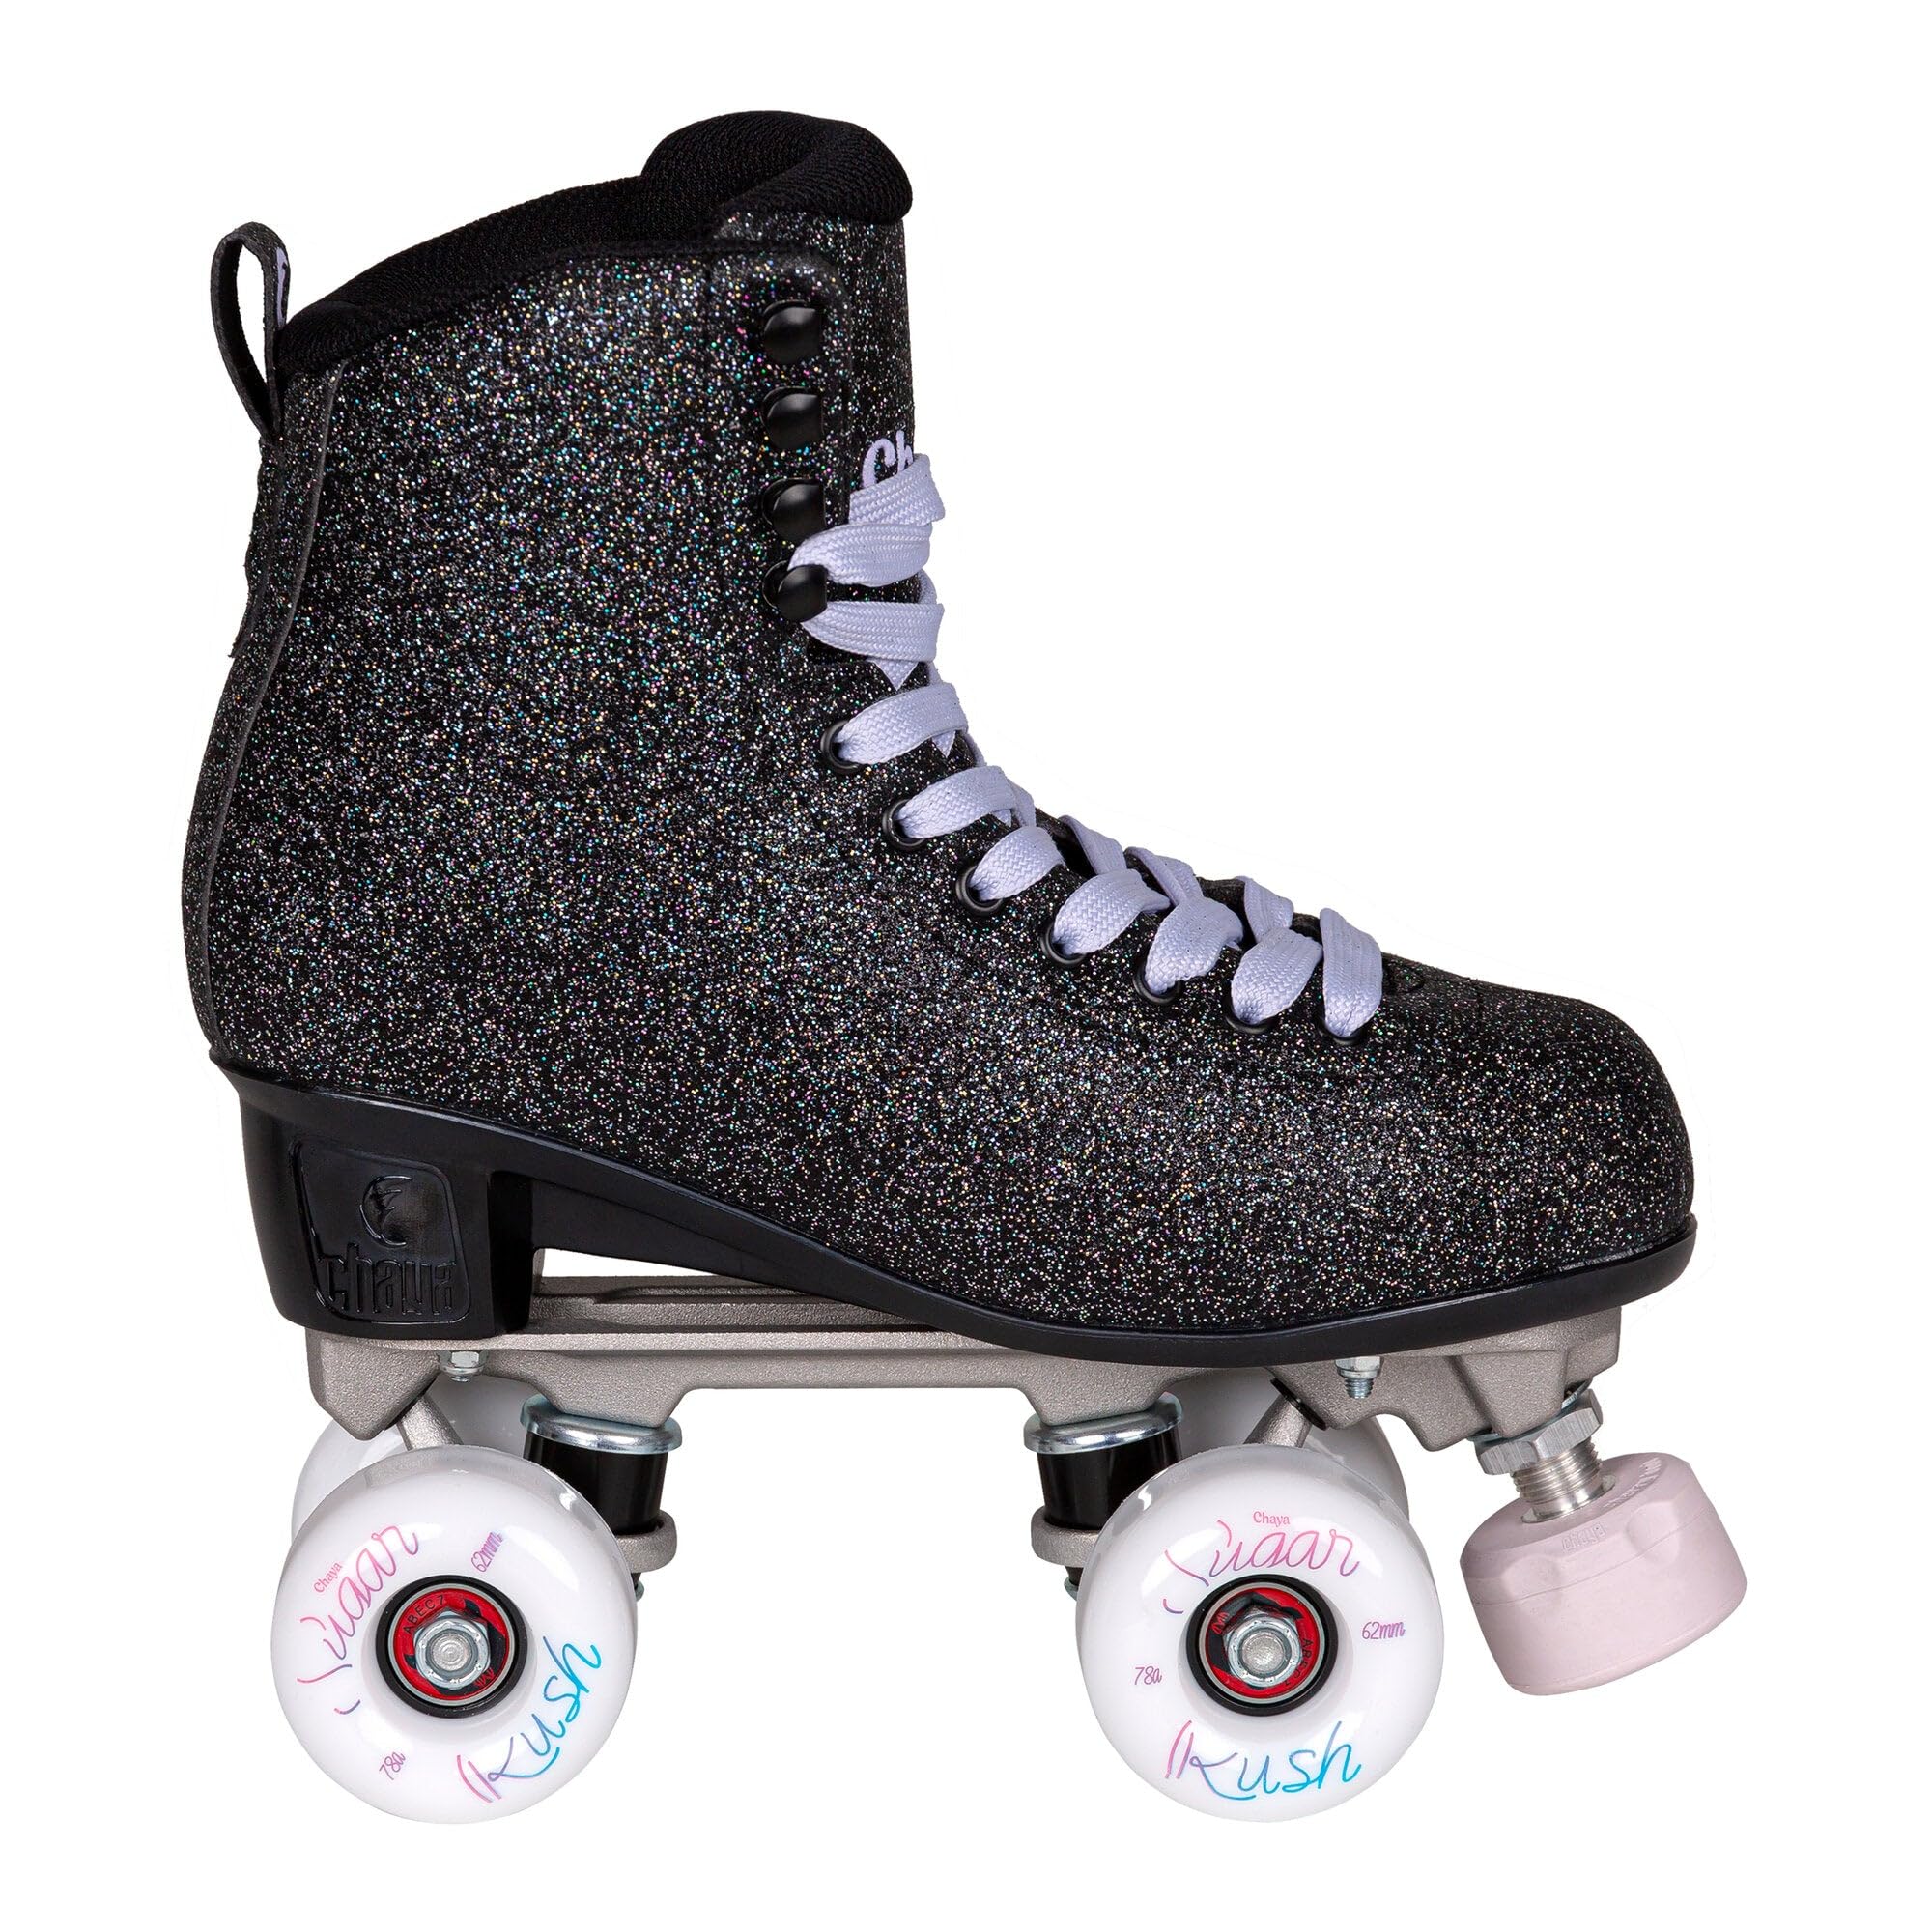 Chaya Roller Skates Melrose Deluxe Starry Night in Schwarz für Damen, 62mm/78A Rollen, ABEC 7 Kugellager, Art. nr.: 810735